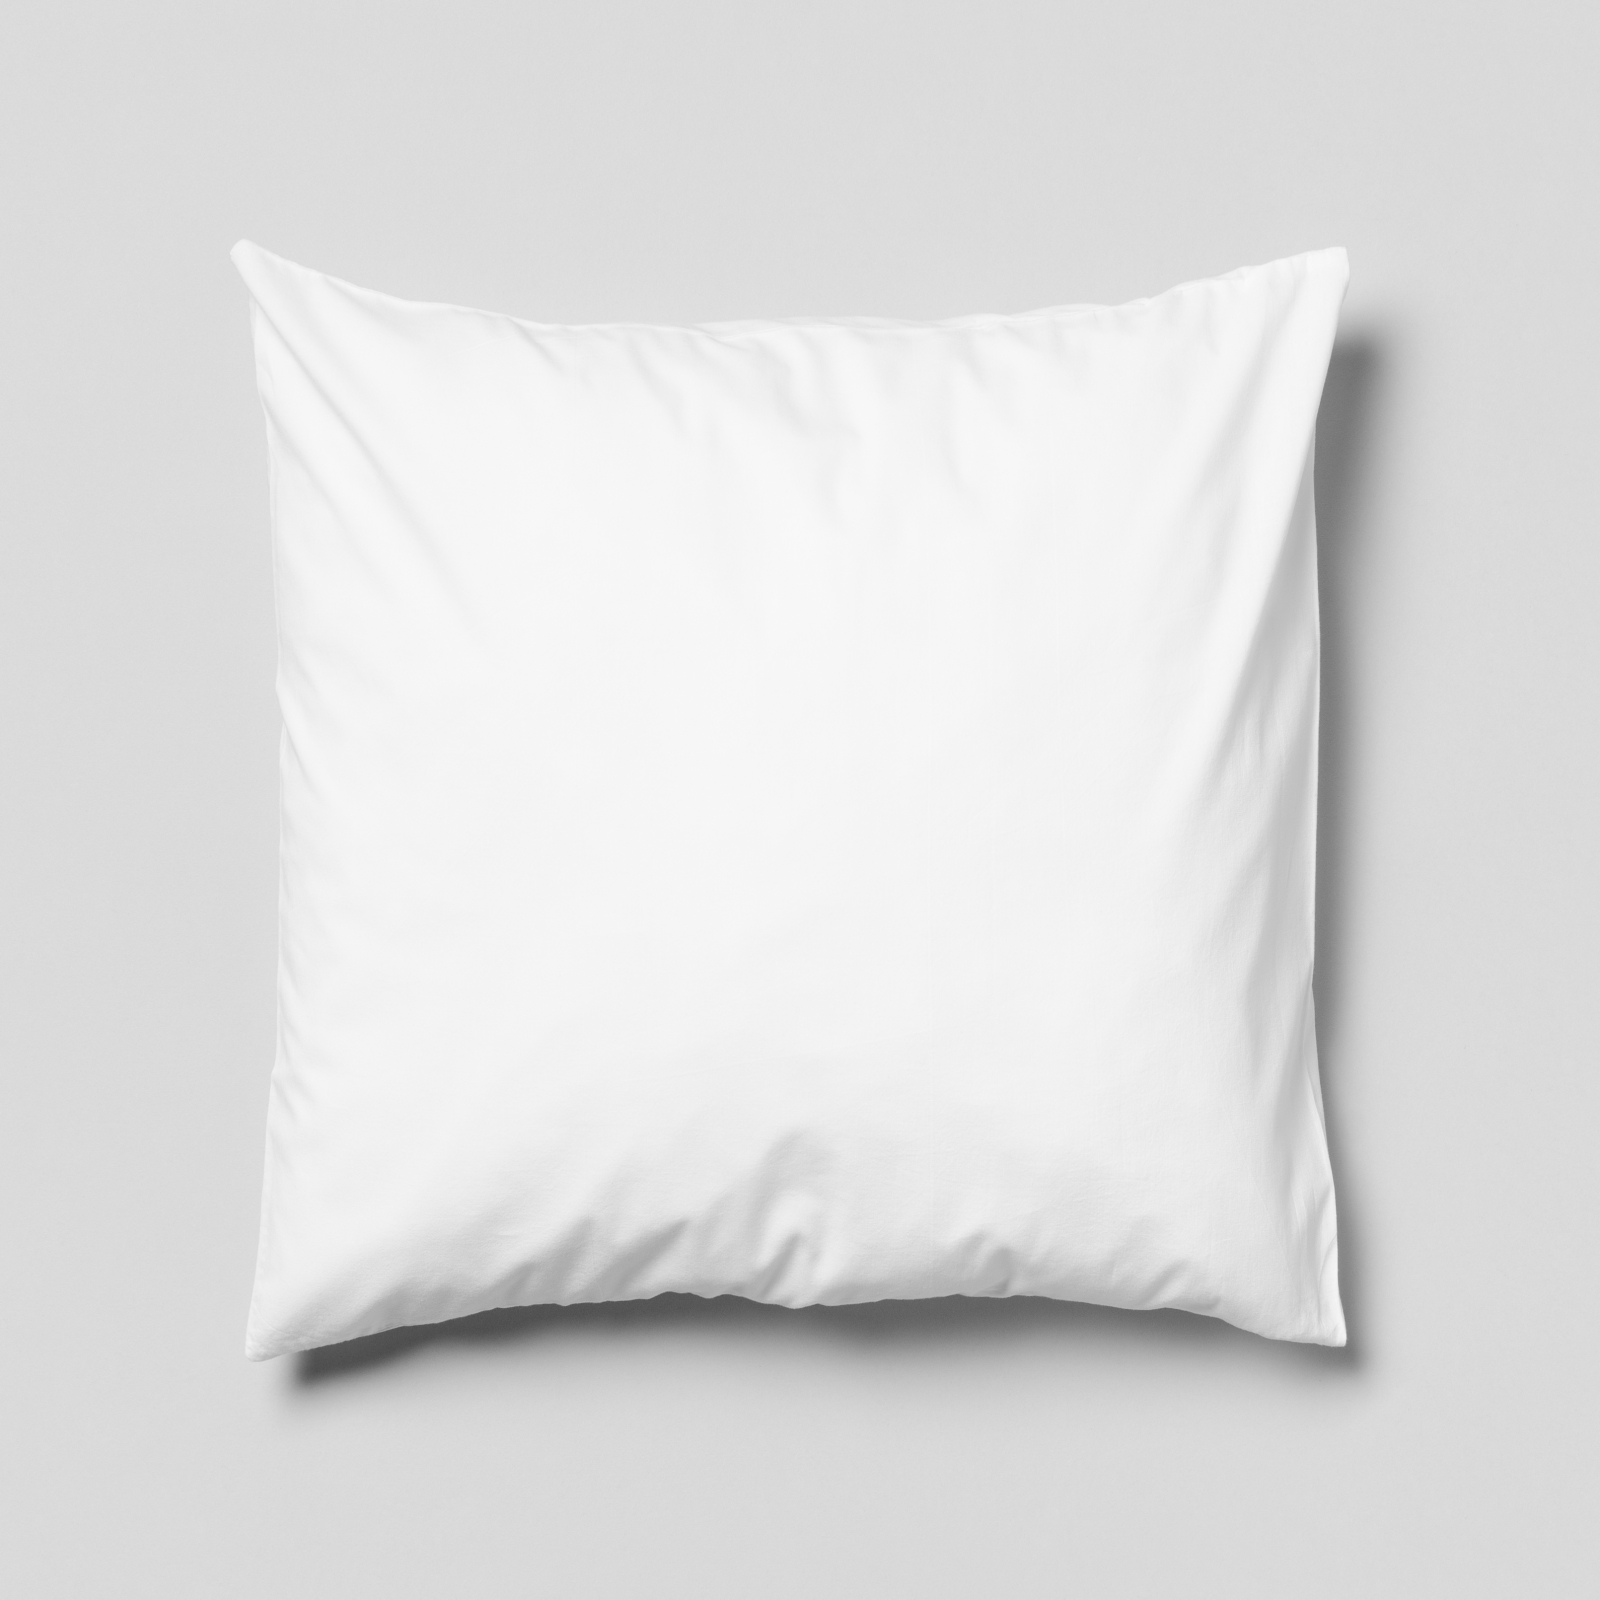 Komplettkissen Polyester-Weiß / 50x50 cm